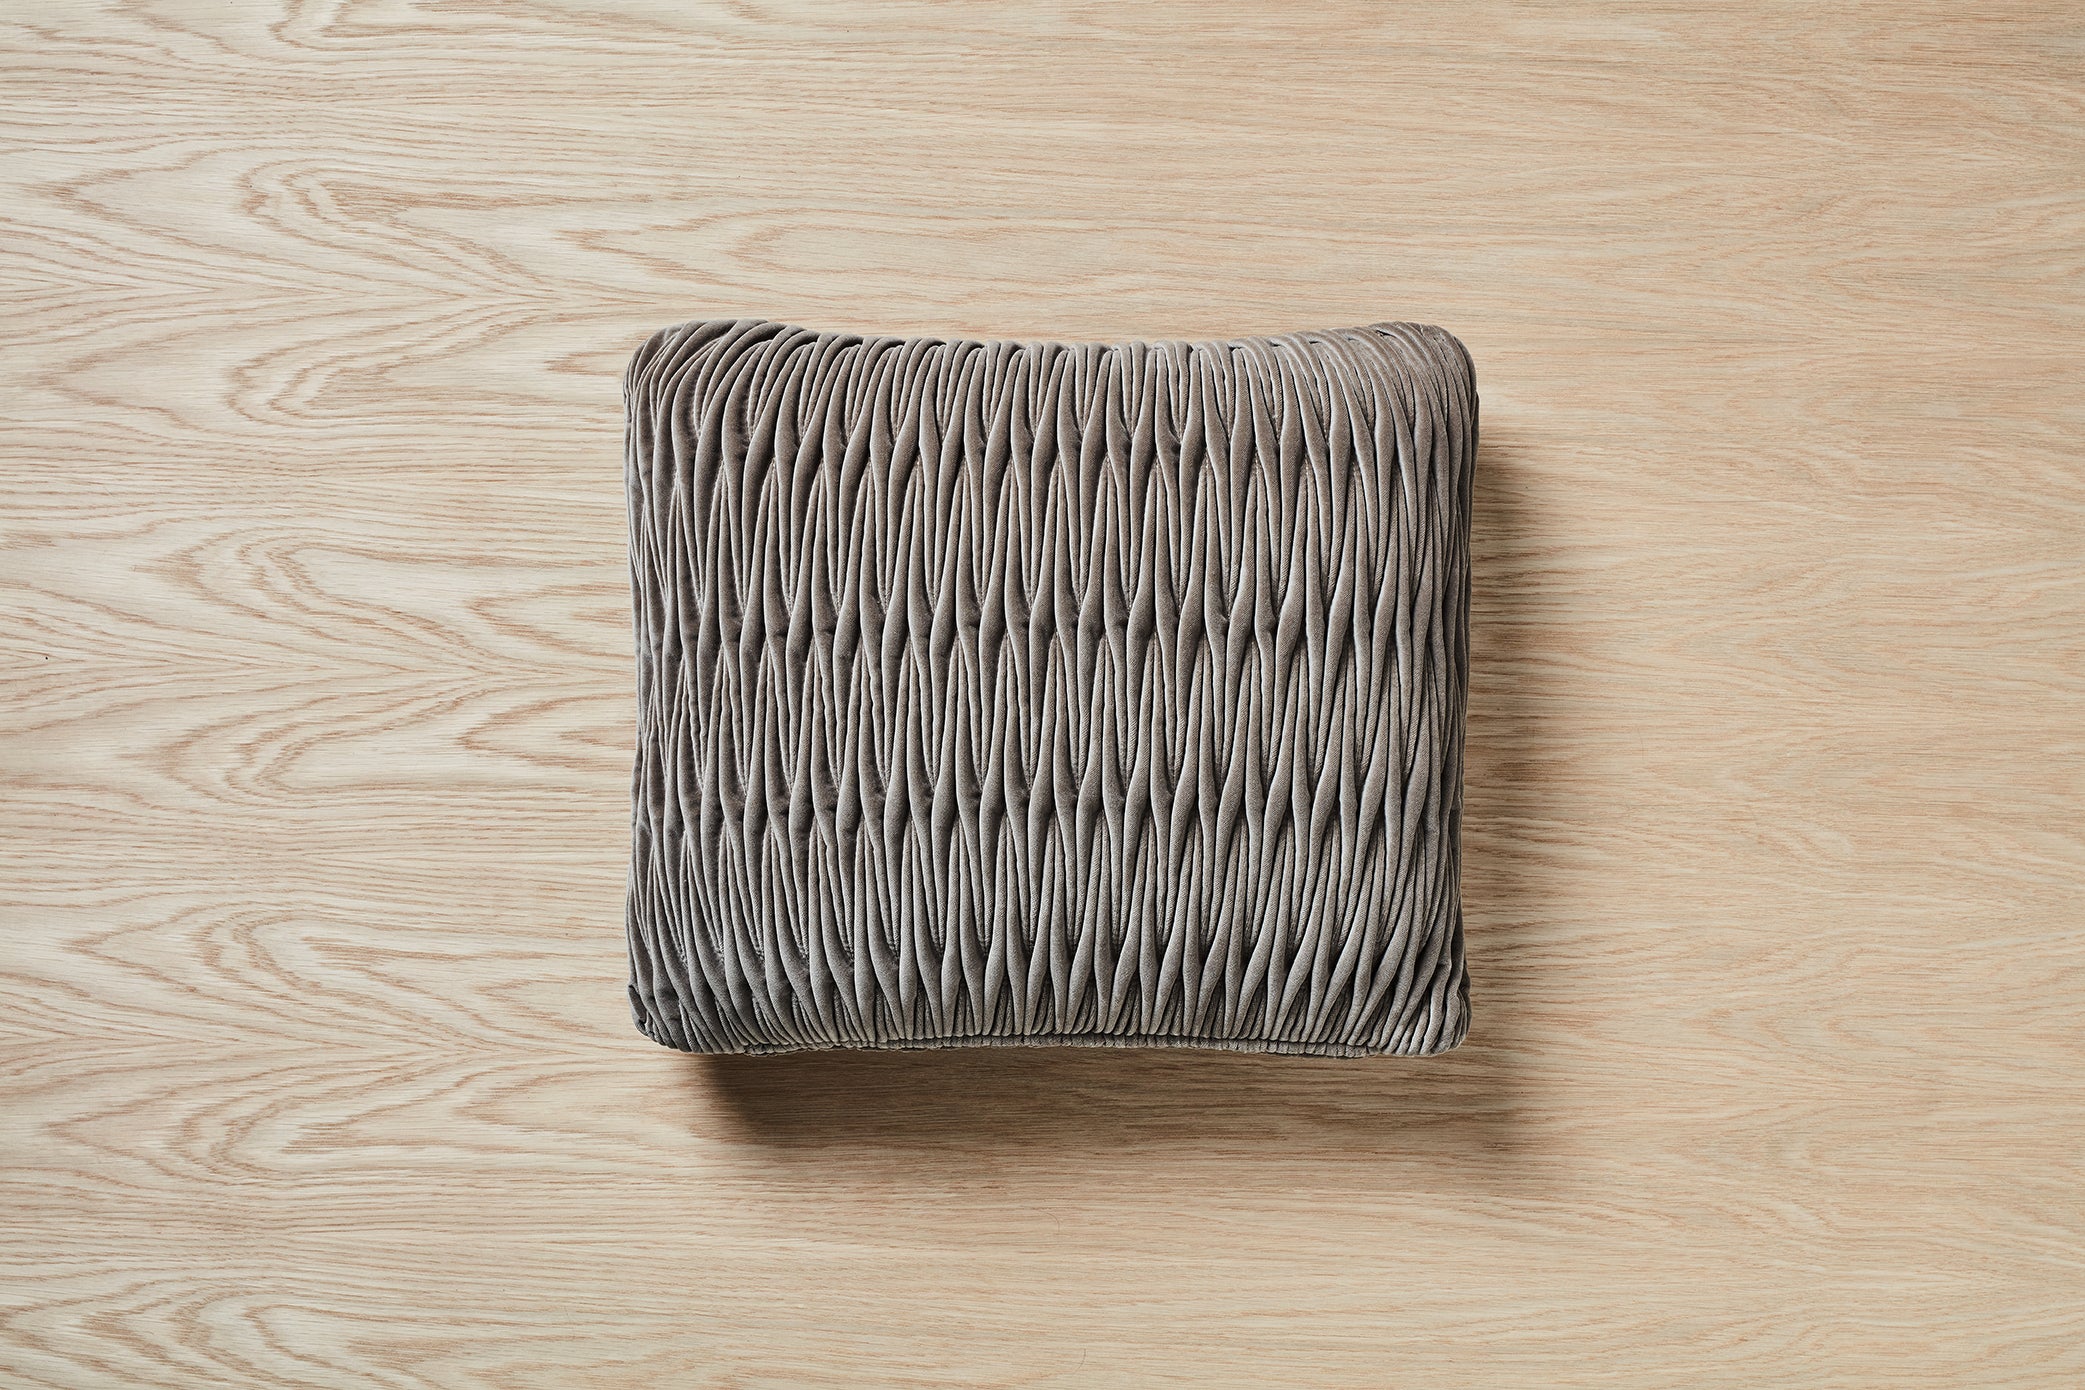 Velvet Ribbon Stitch 400 x 400 Cushion - Zuster Furniture